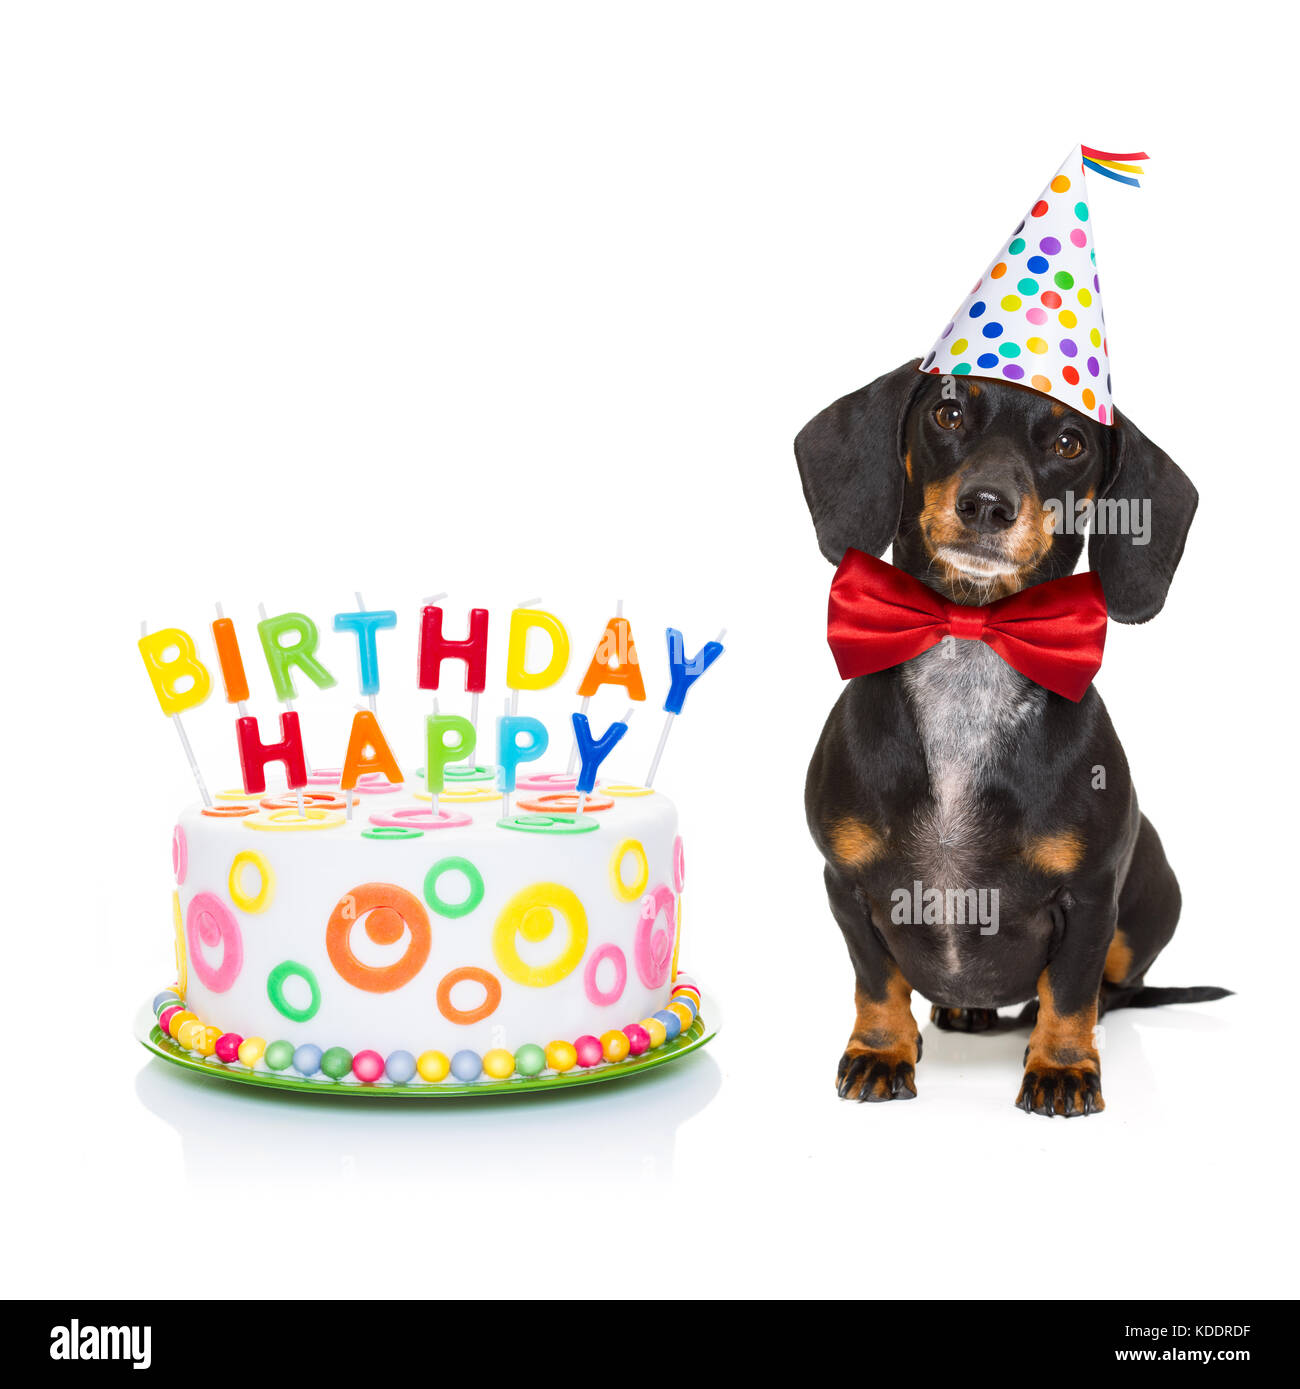 Dackel oder Wurst Hund hungrig für einen herzlichen Glückwunsch zum  Geburtstag Kuchen mit Kerzen, tragen rote Krawatte und Hut, auf weißem  Hintergrund Stockfotografie - Alamy